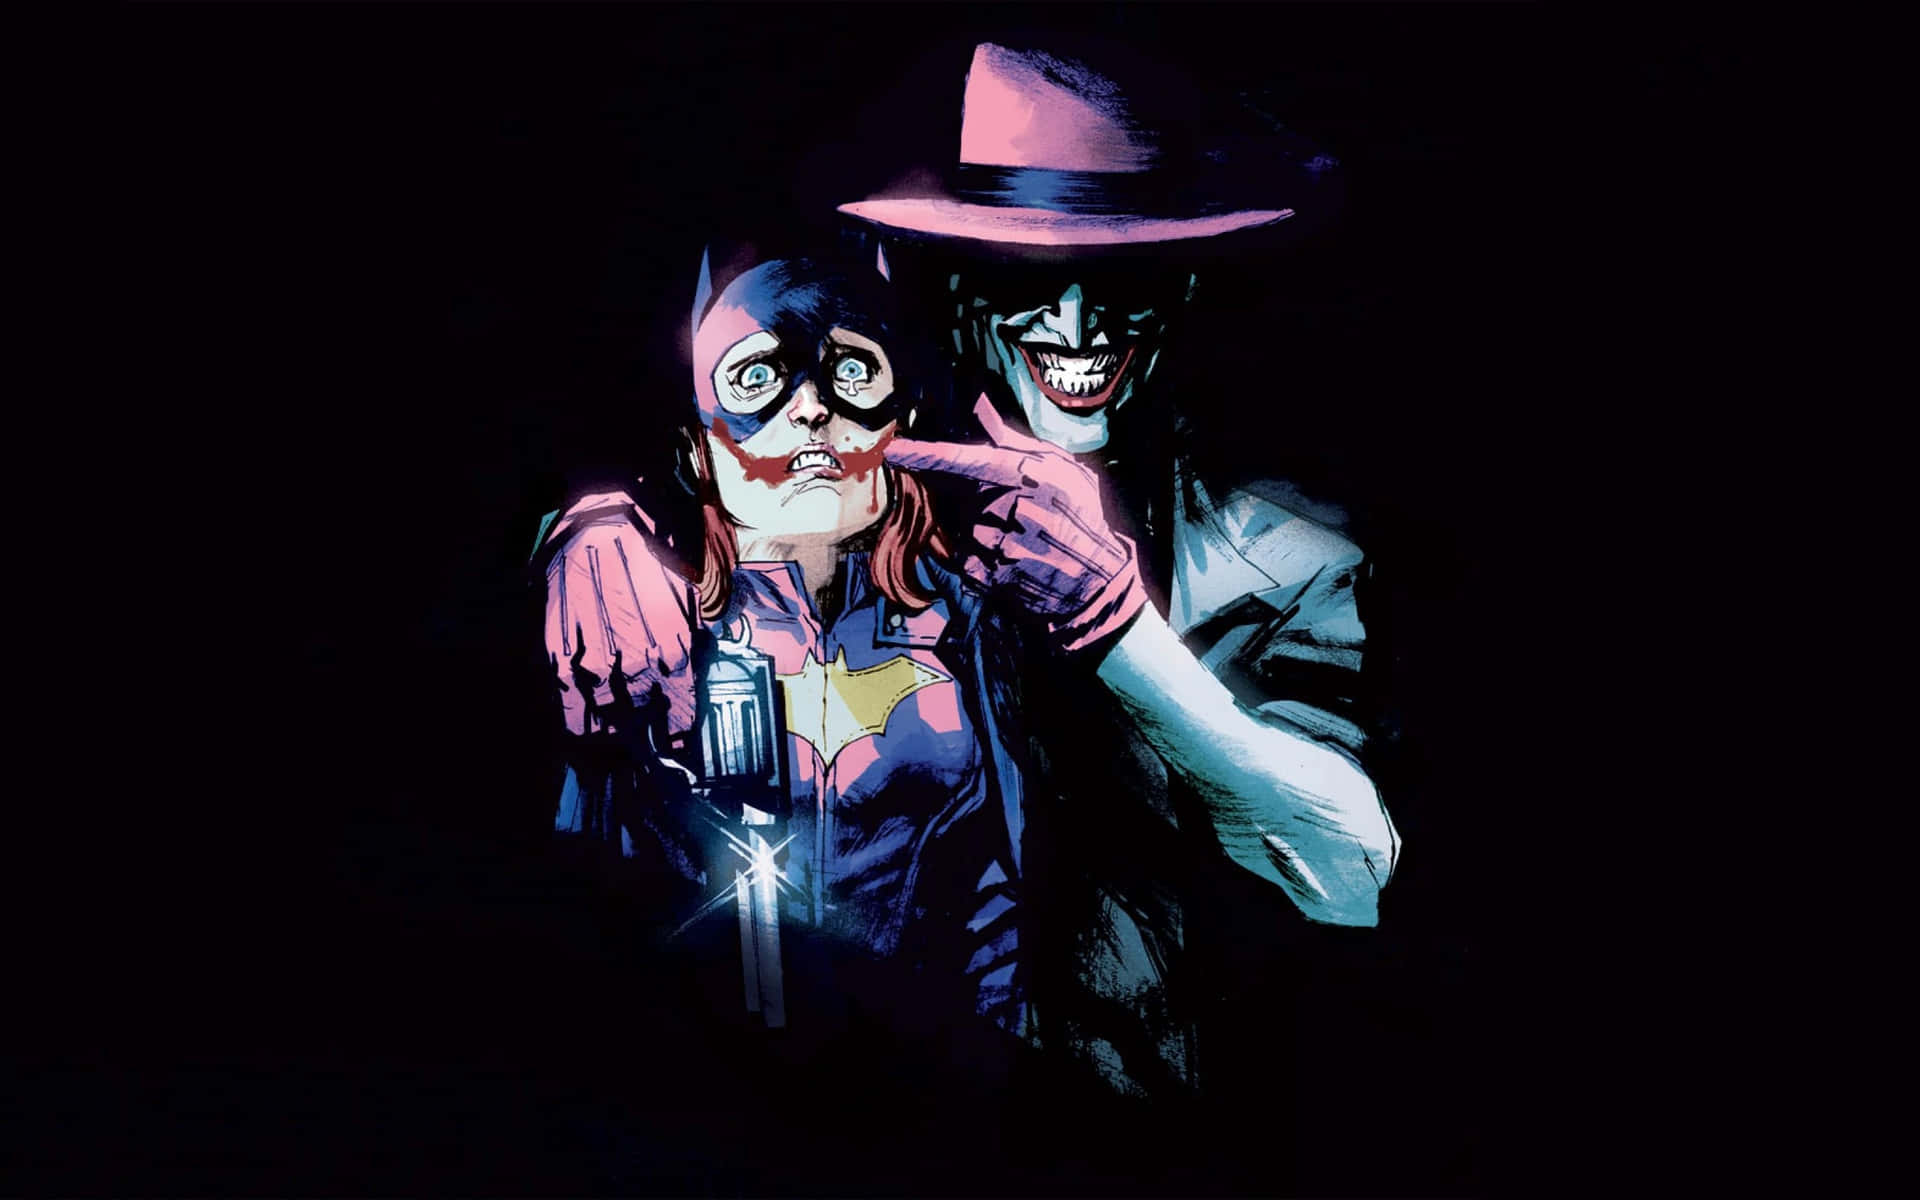 Bildder Clownprinz Des Verbrechens, Der Joker Aus Den Dc Comics. Wallpaper